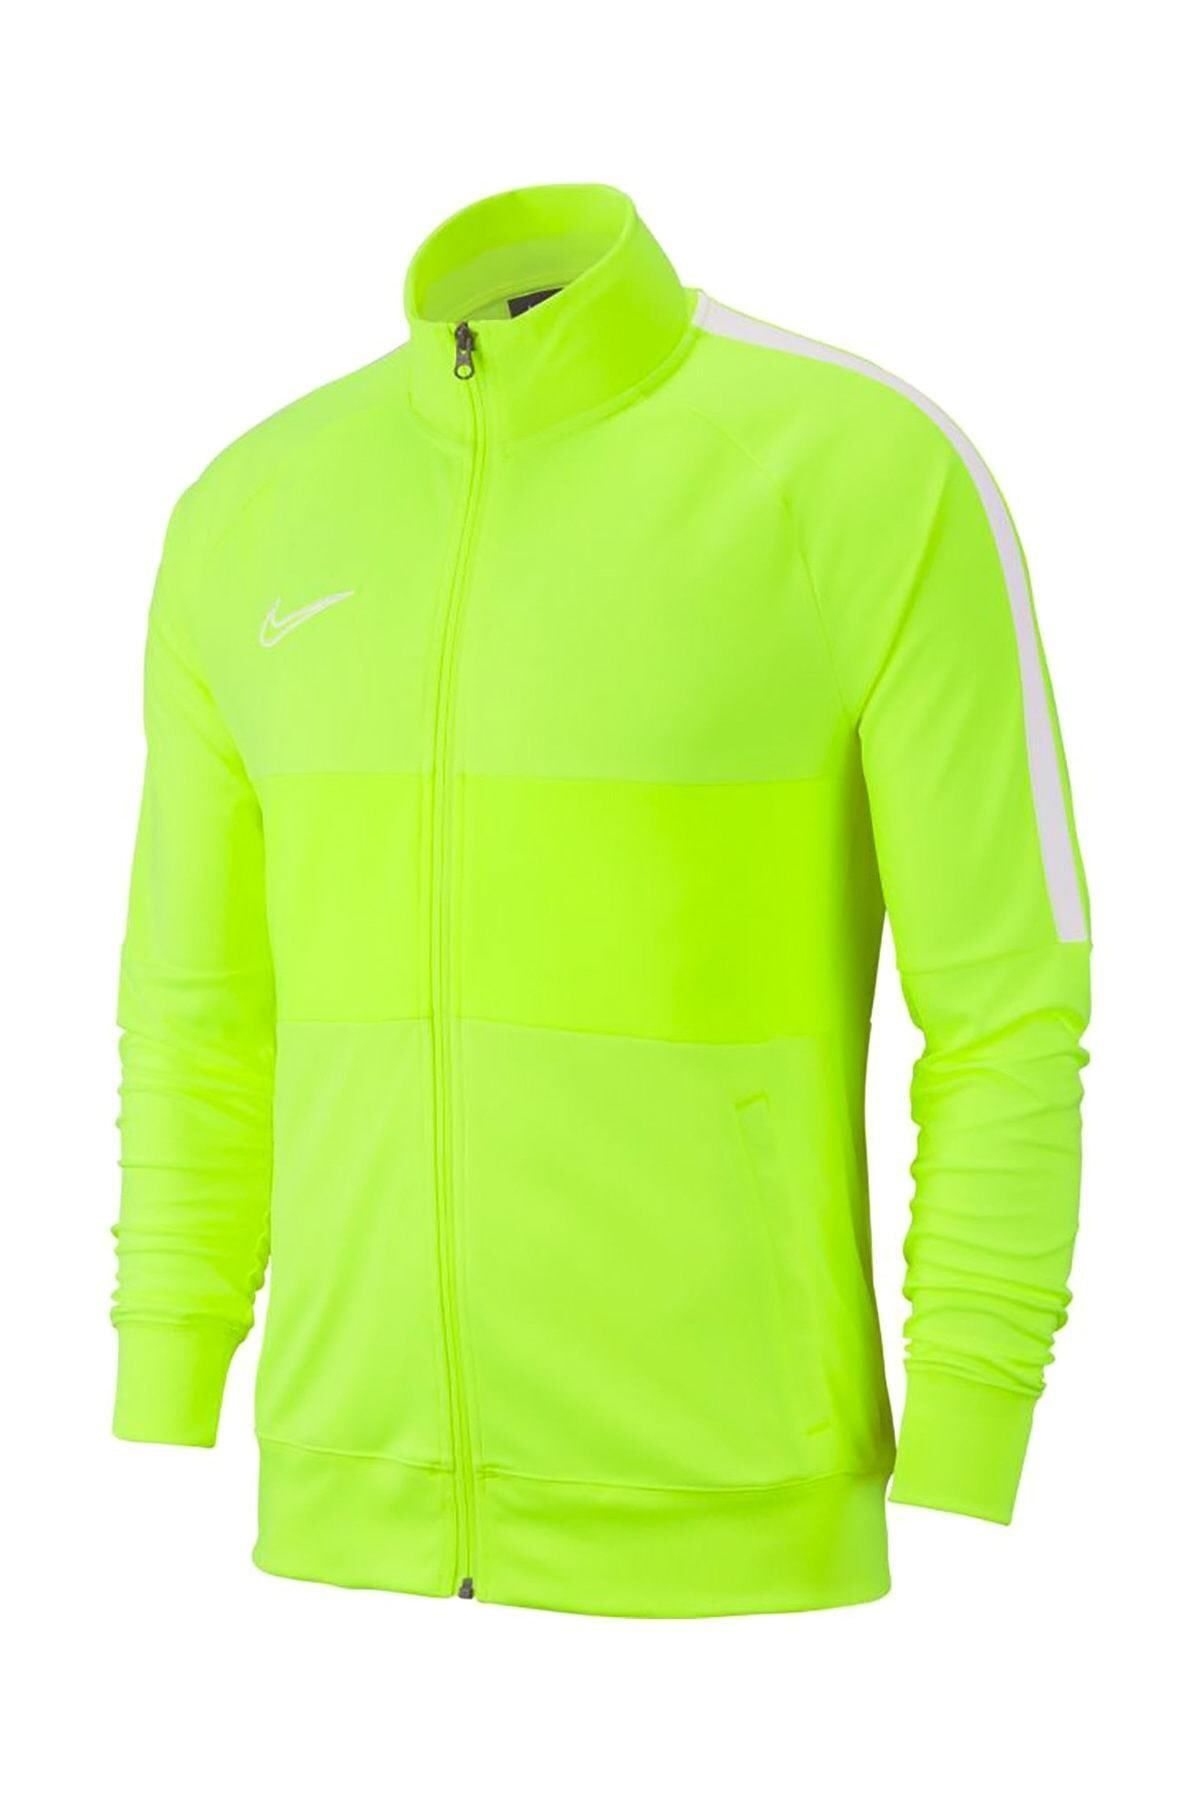 Nike Erkek Sweatshirt - Dry Acdmy19 Trk Jk - AJ9180-702